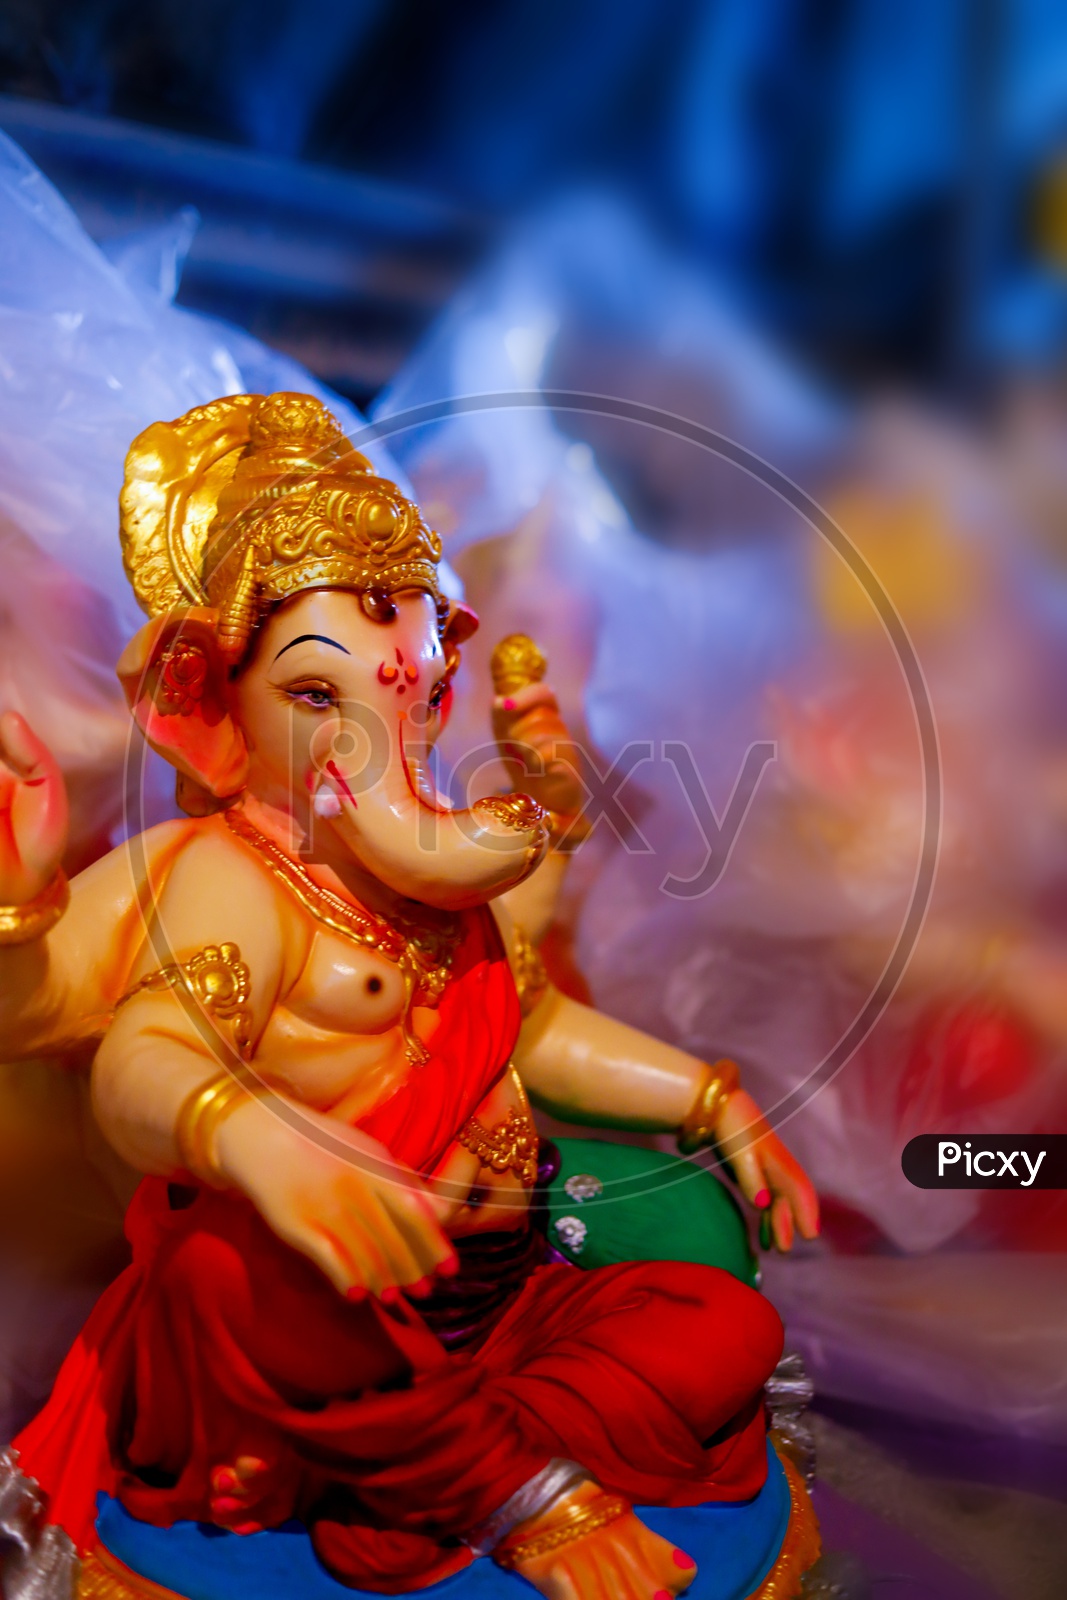 Close up shot of Lord Ganesha Idol/ Ganesh